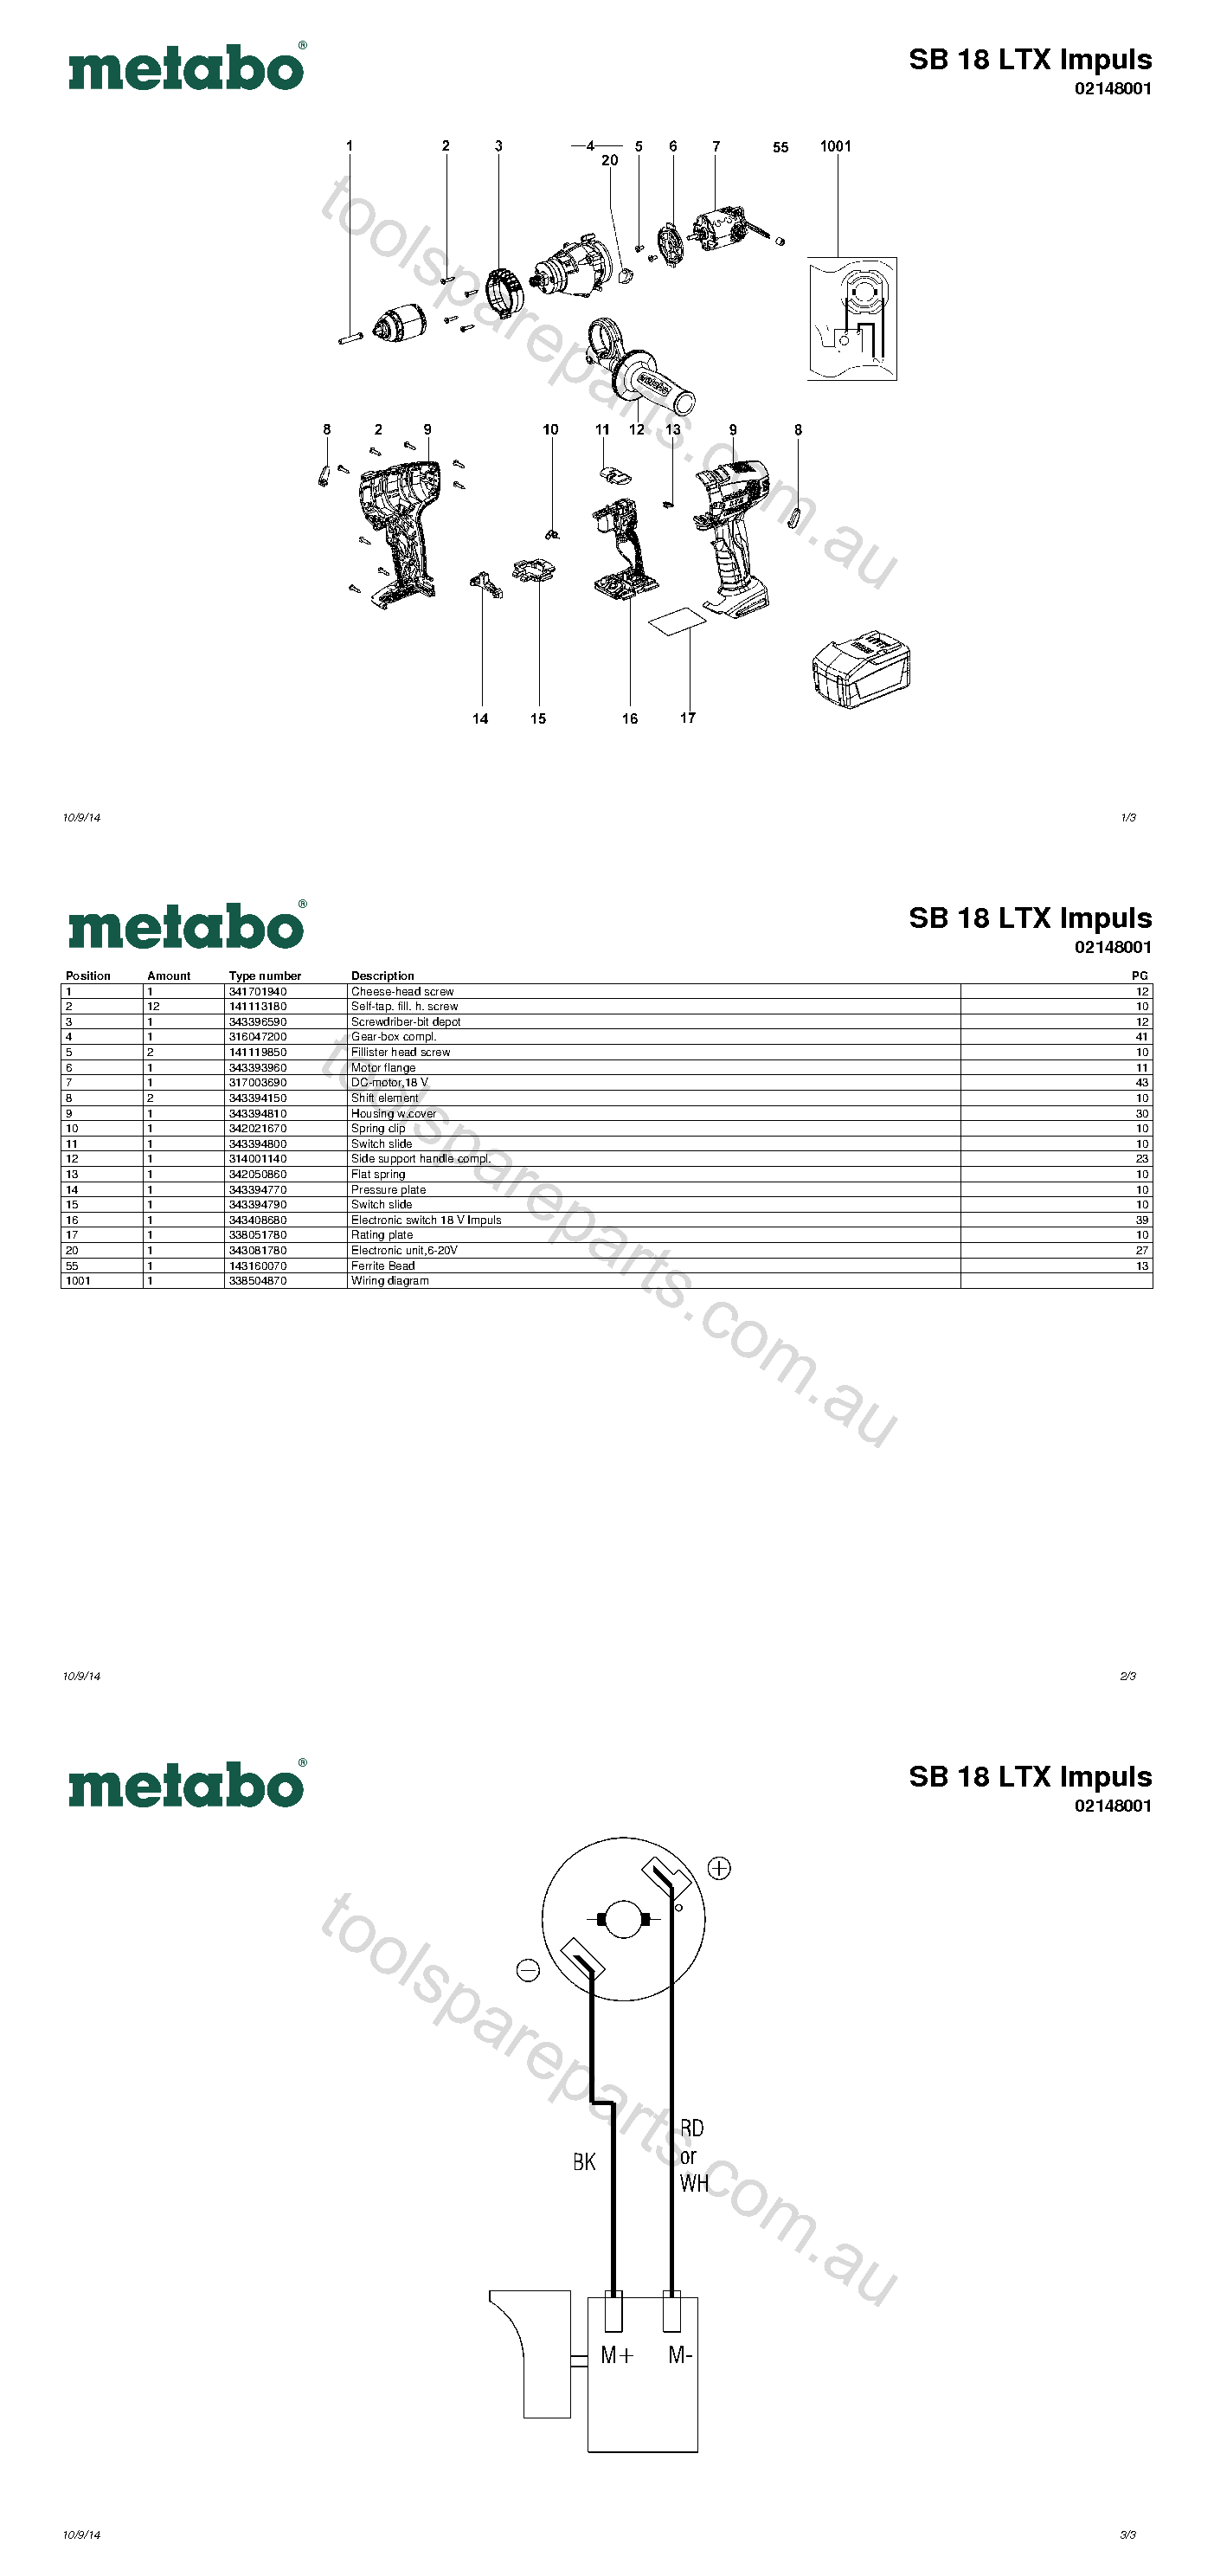 Metabo SB 18 LTX Impuls 02148001  Diagram 1